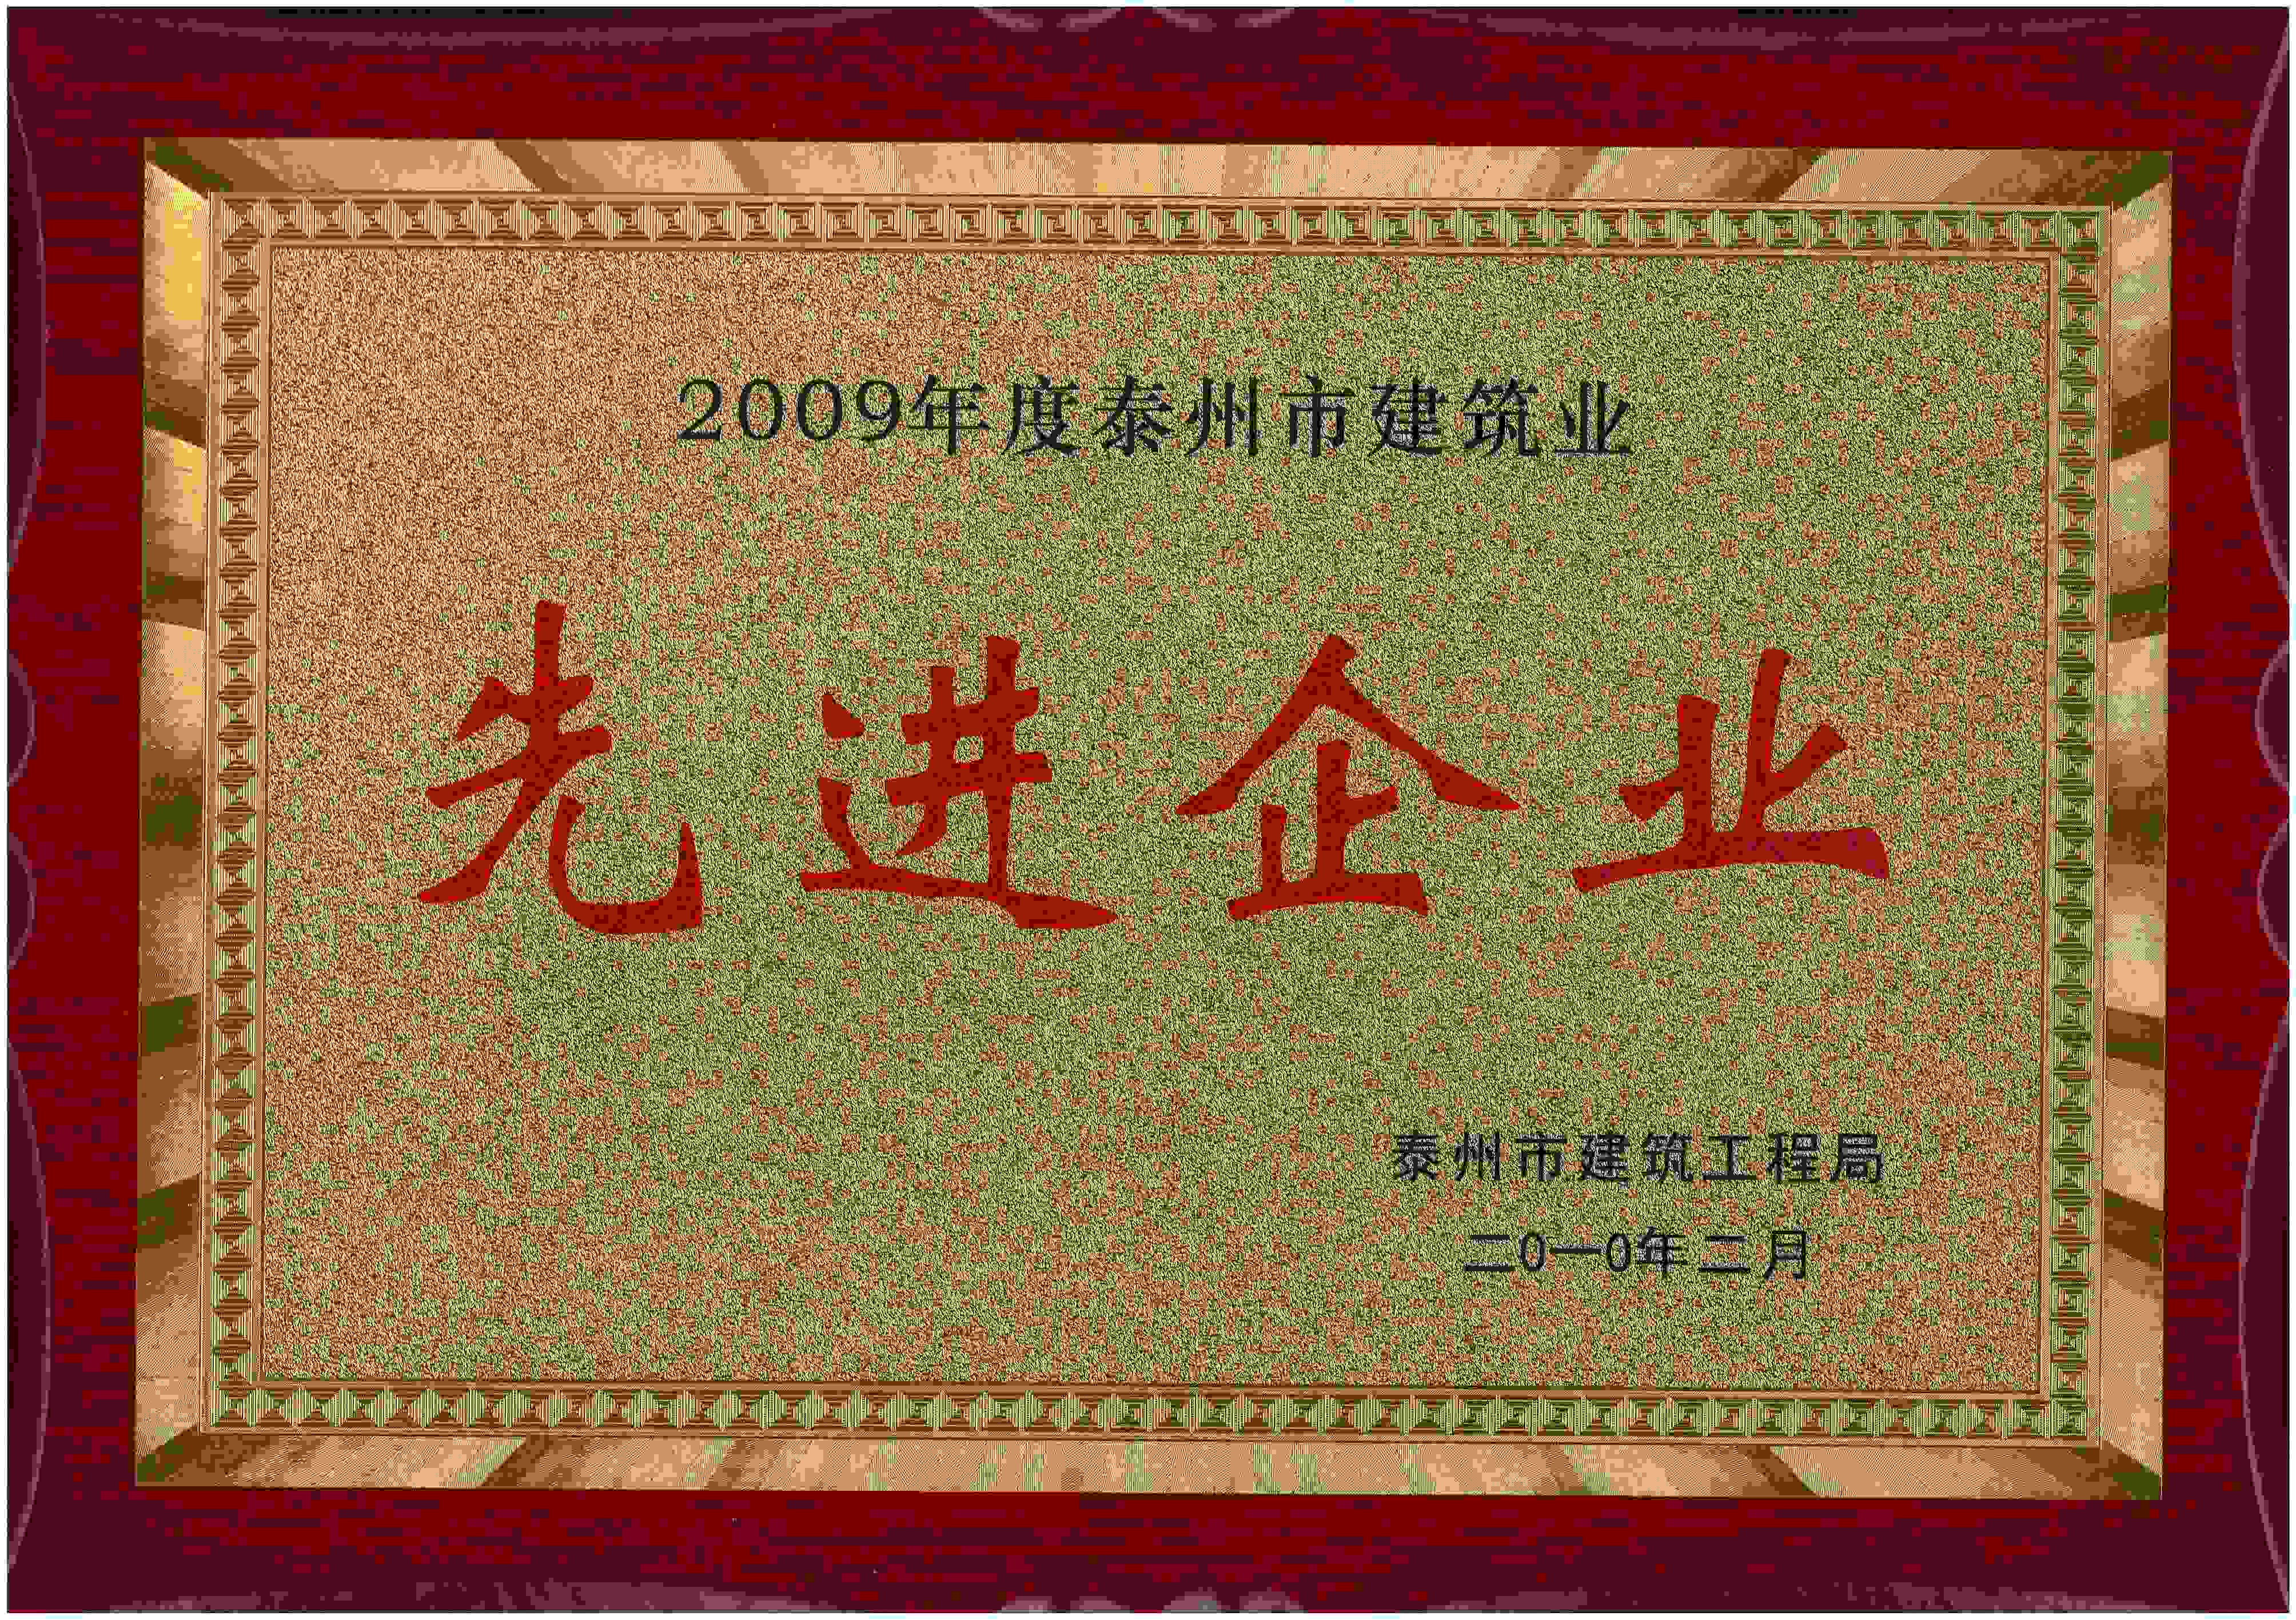 2010年 江苏省泰州市建筑工程局颁发的“2009年度泰州市建筑业 先进企业”企业荣誉奖牌